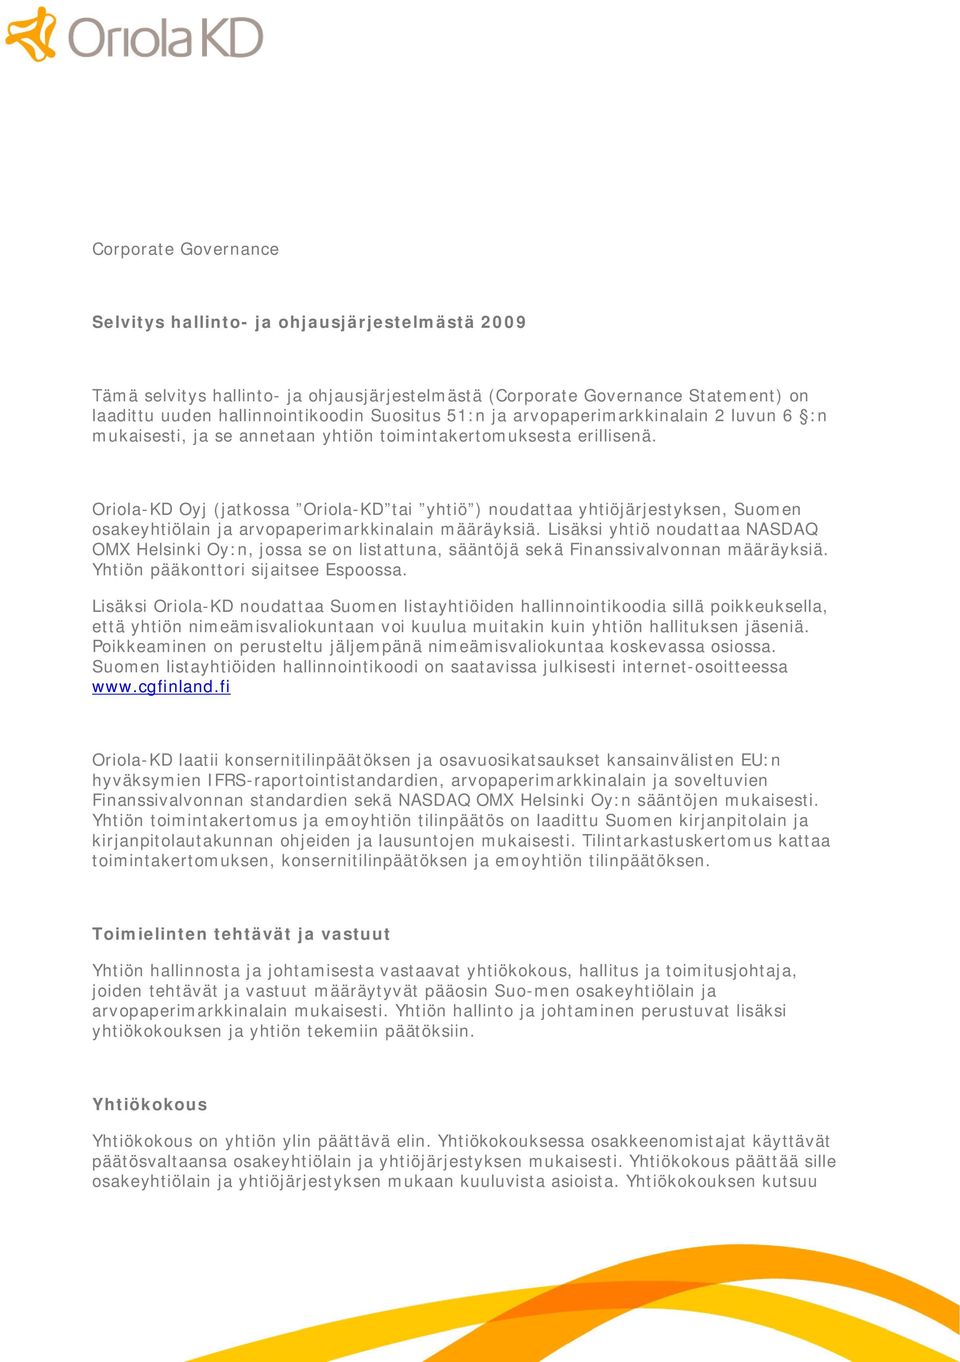 Oriola KD Oyj (jatkossa Oriola KD tai yhtiö ) noudattaa yhtiöjärjestyksen, Suomen osakeyhtiölain ja arvopaperimarkkinalain määräyksiä.